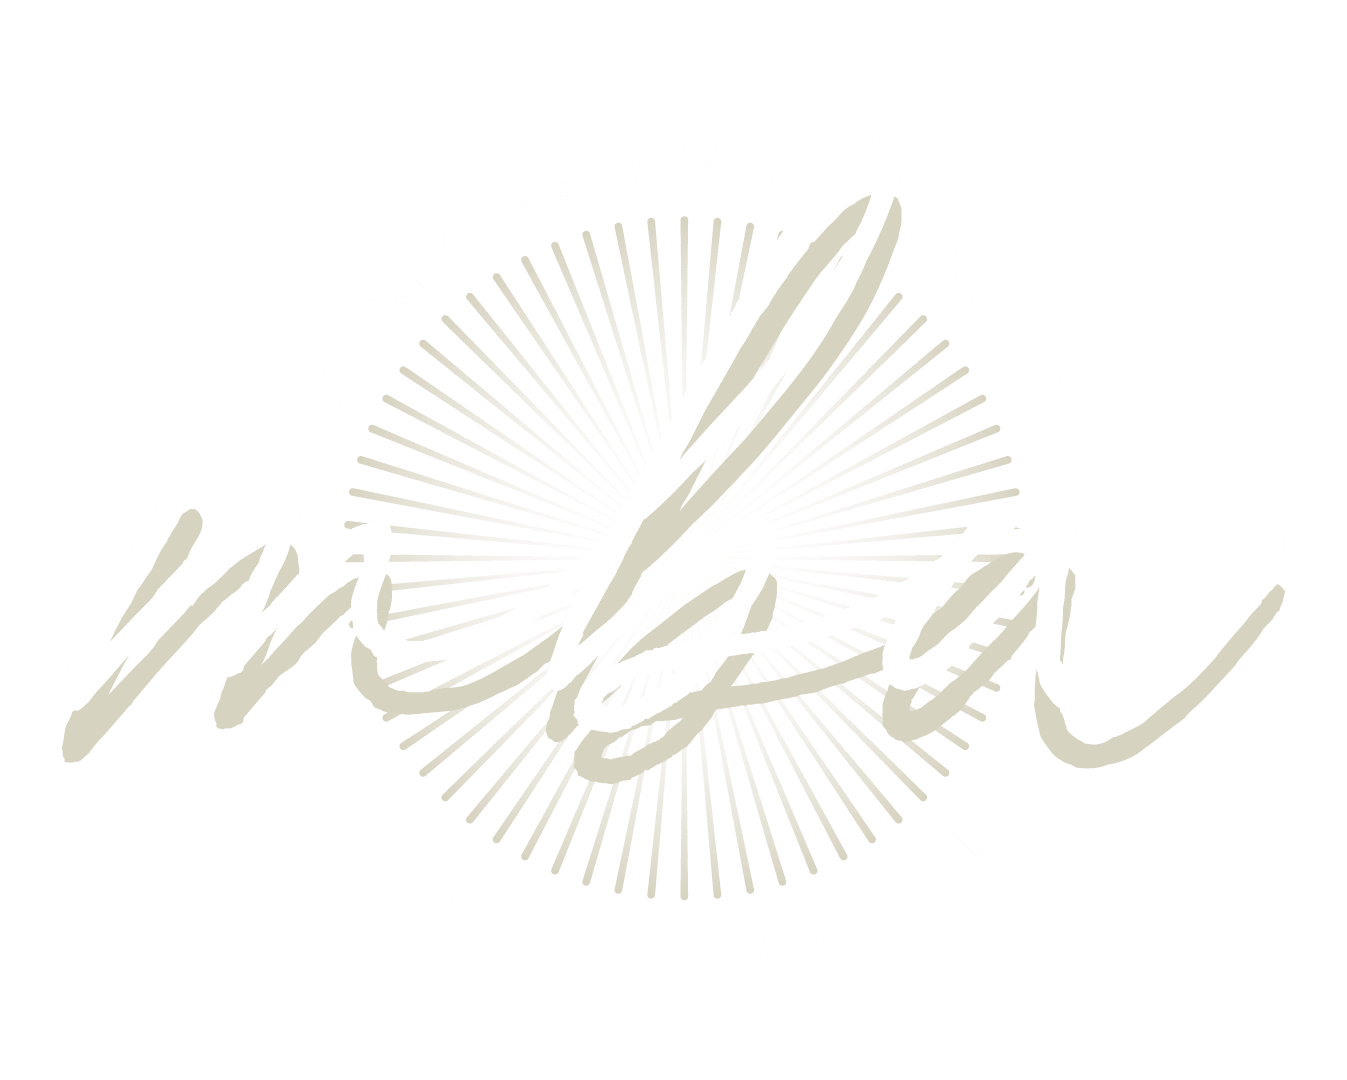 Modern Business Academy